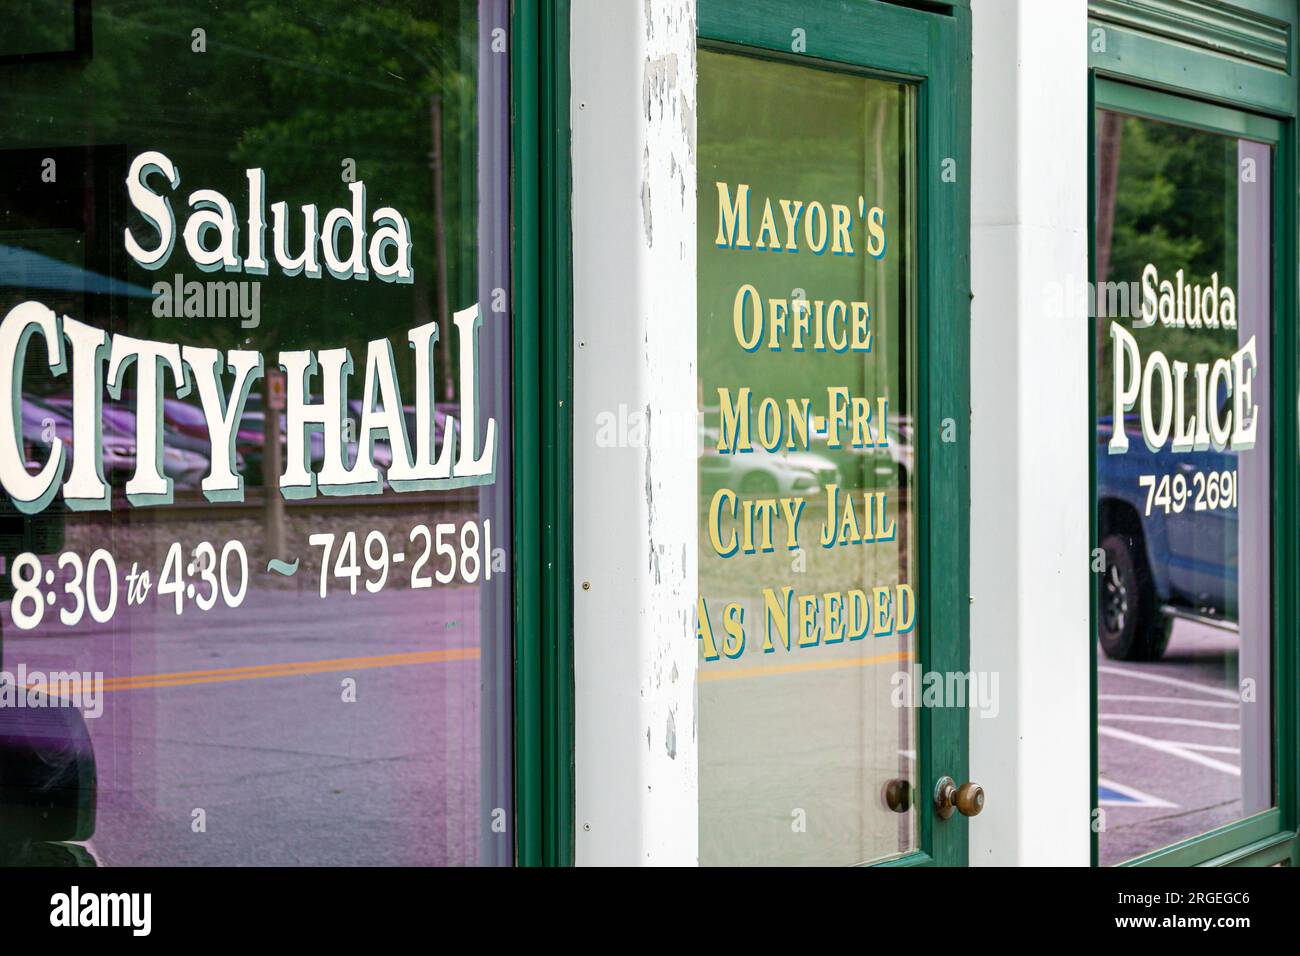 Saluda North Carolina, Büro des Bürgermeisters, Gefängnispolizei, Außenansicht, Eingang des Gebäudes, Schilderinformationen Stockfoto